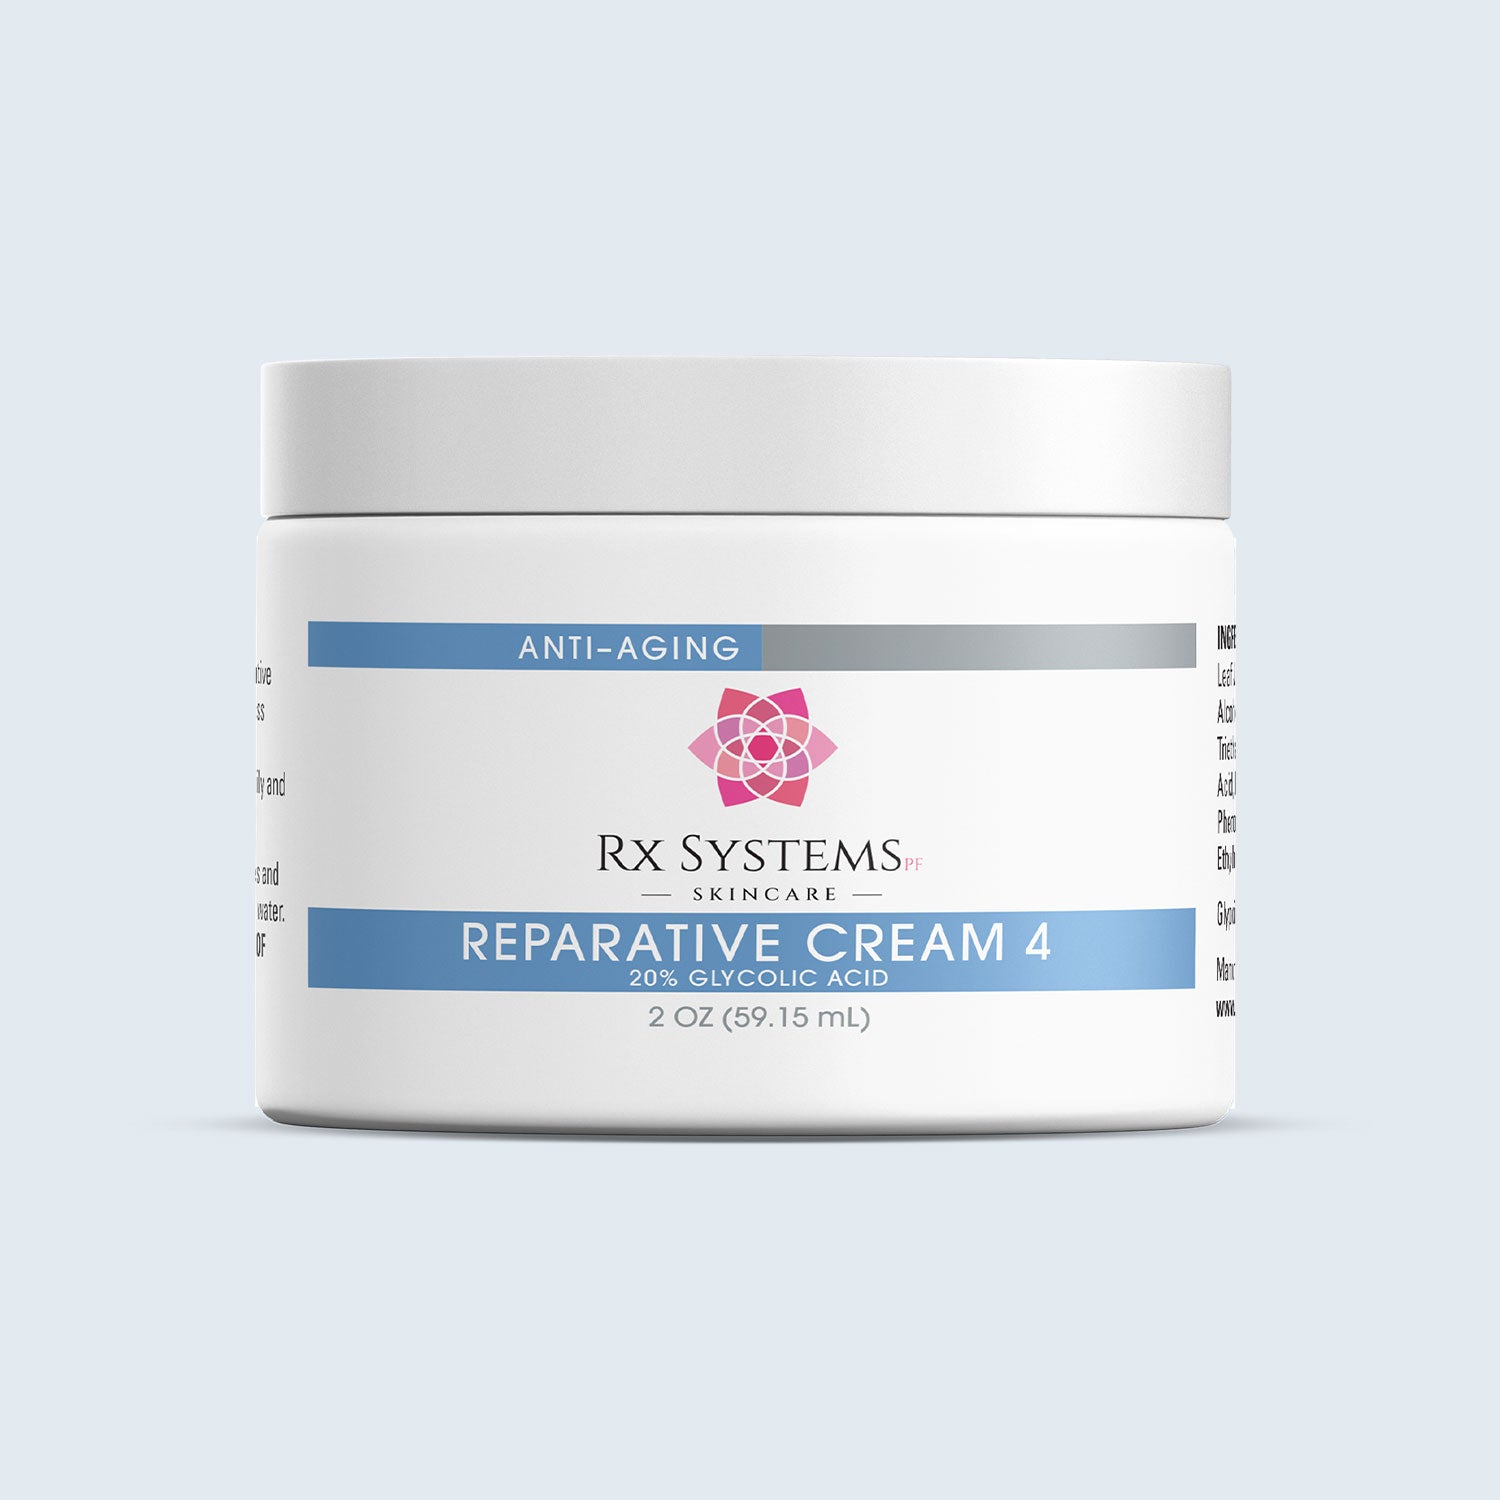 Reparative Cream 4